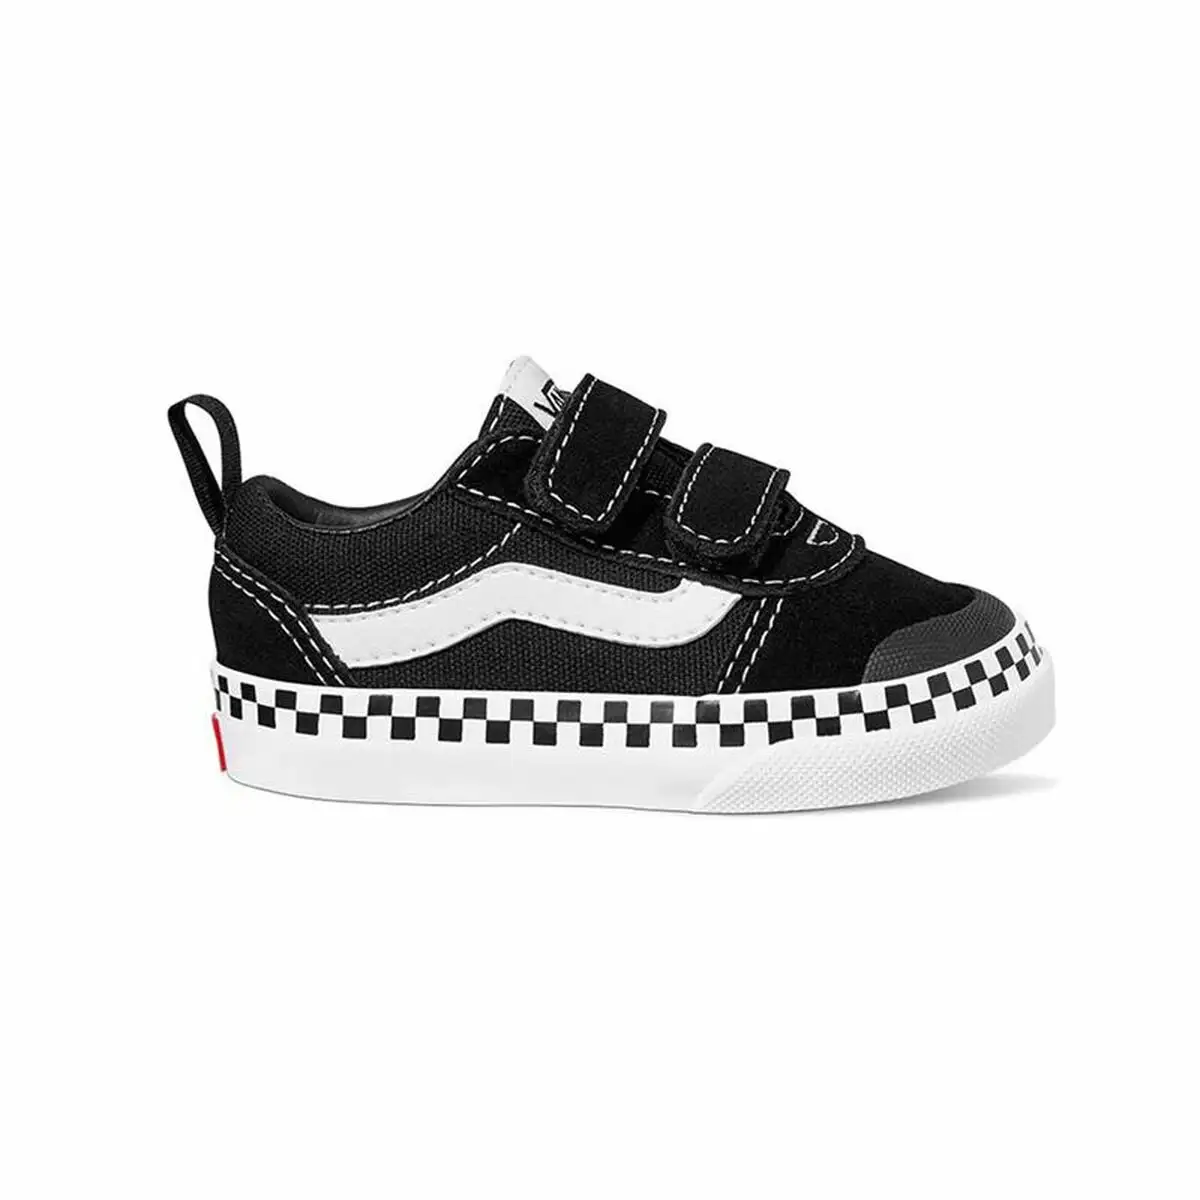 Chaussures casual enfant vans ward checker foxing noir_5760. Bienvenue sur DIAYTAR SENEGAL - Où le Shopping est une Affaire Personnelle. Découvrez notre sélection et choisissez des produits qui reflètent votre unicité et votre individualité.